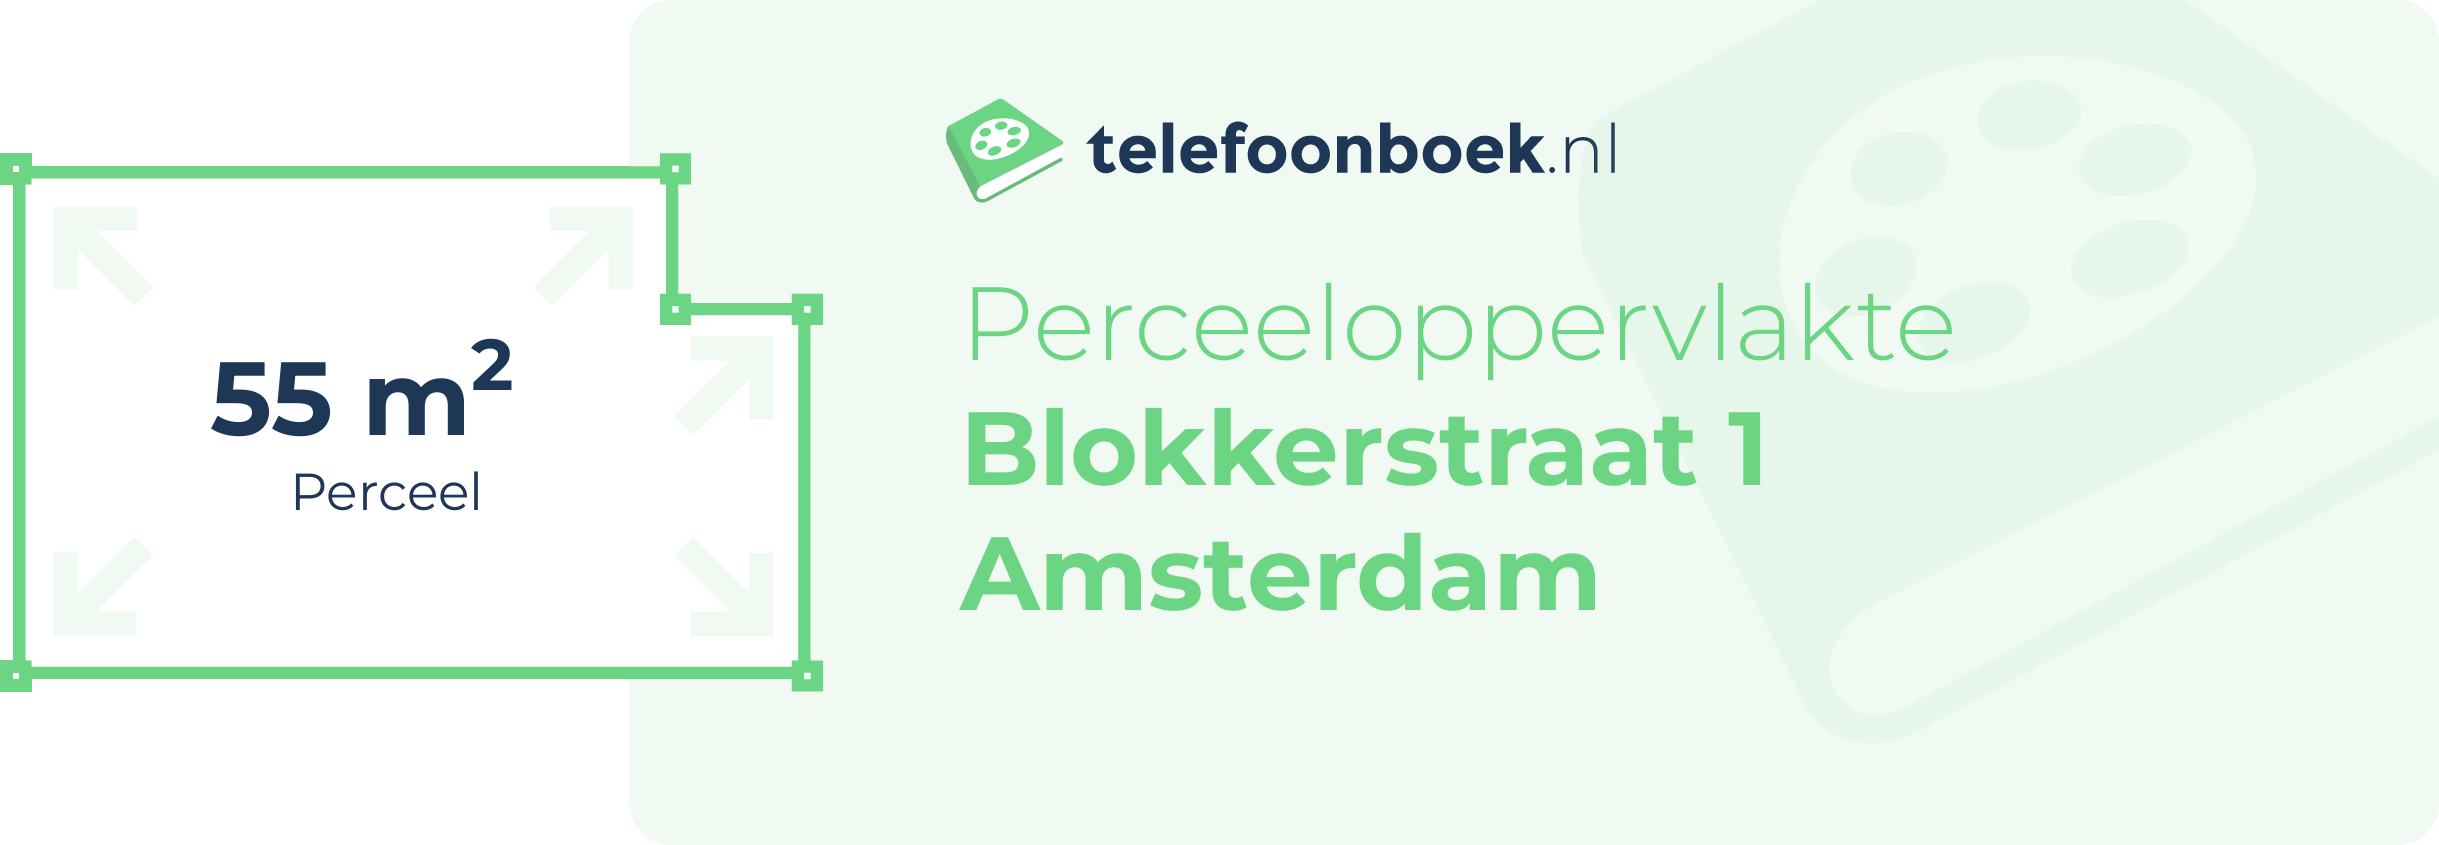 Perceeloppervlakte Blokkerstraat 1 Amsterdam